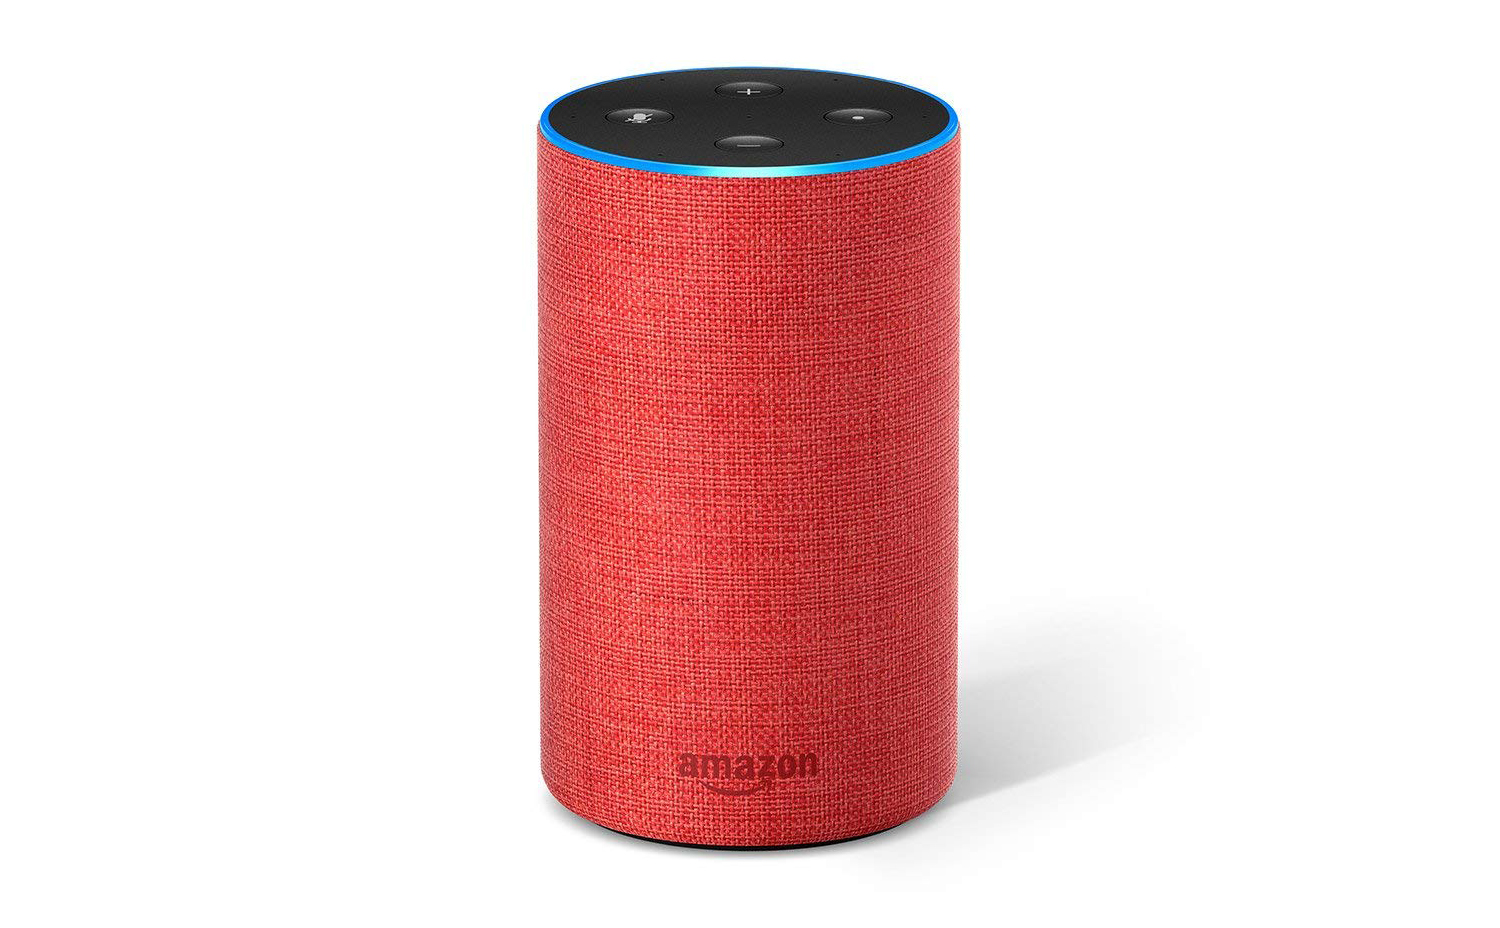 Amazon ra mắt loa Echo màu đỏ Product (RED), giảm còn 69 USD dịp Black Friday